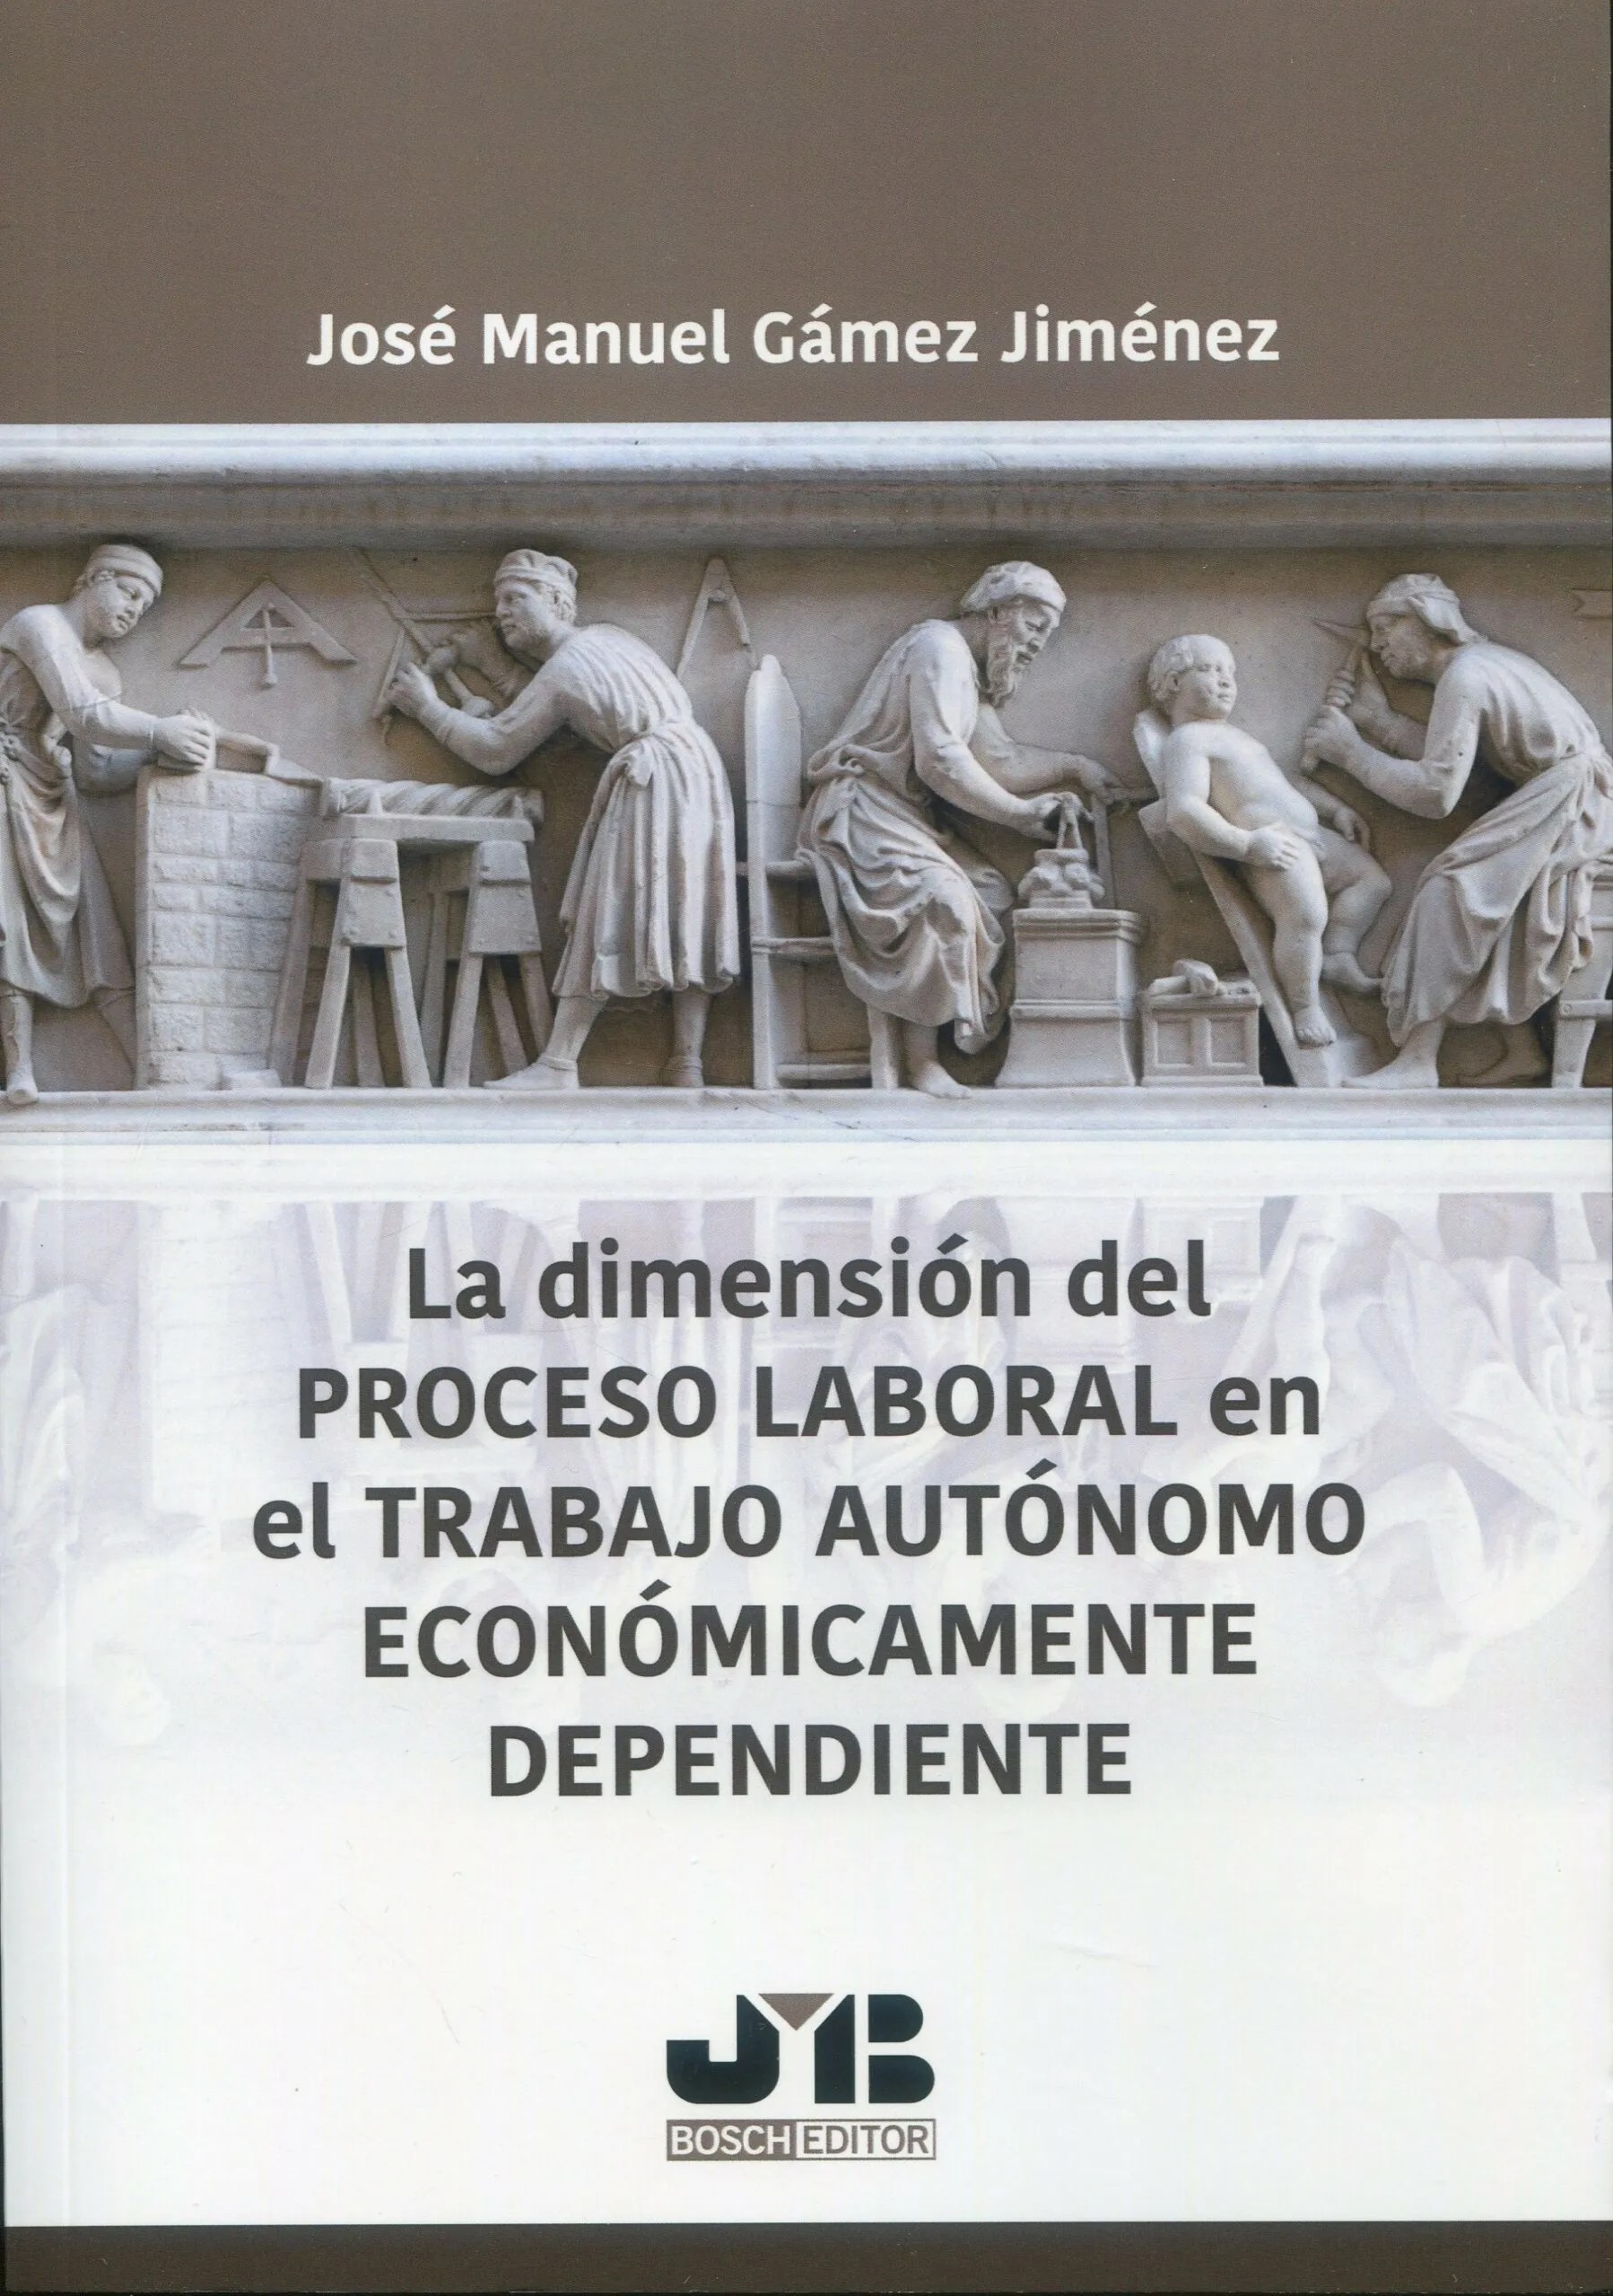 Imagen de portada del libro La dimensión del Proceso Laboral en el Trabajo Autónomo Económicamente Dependiente